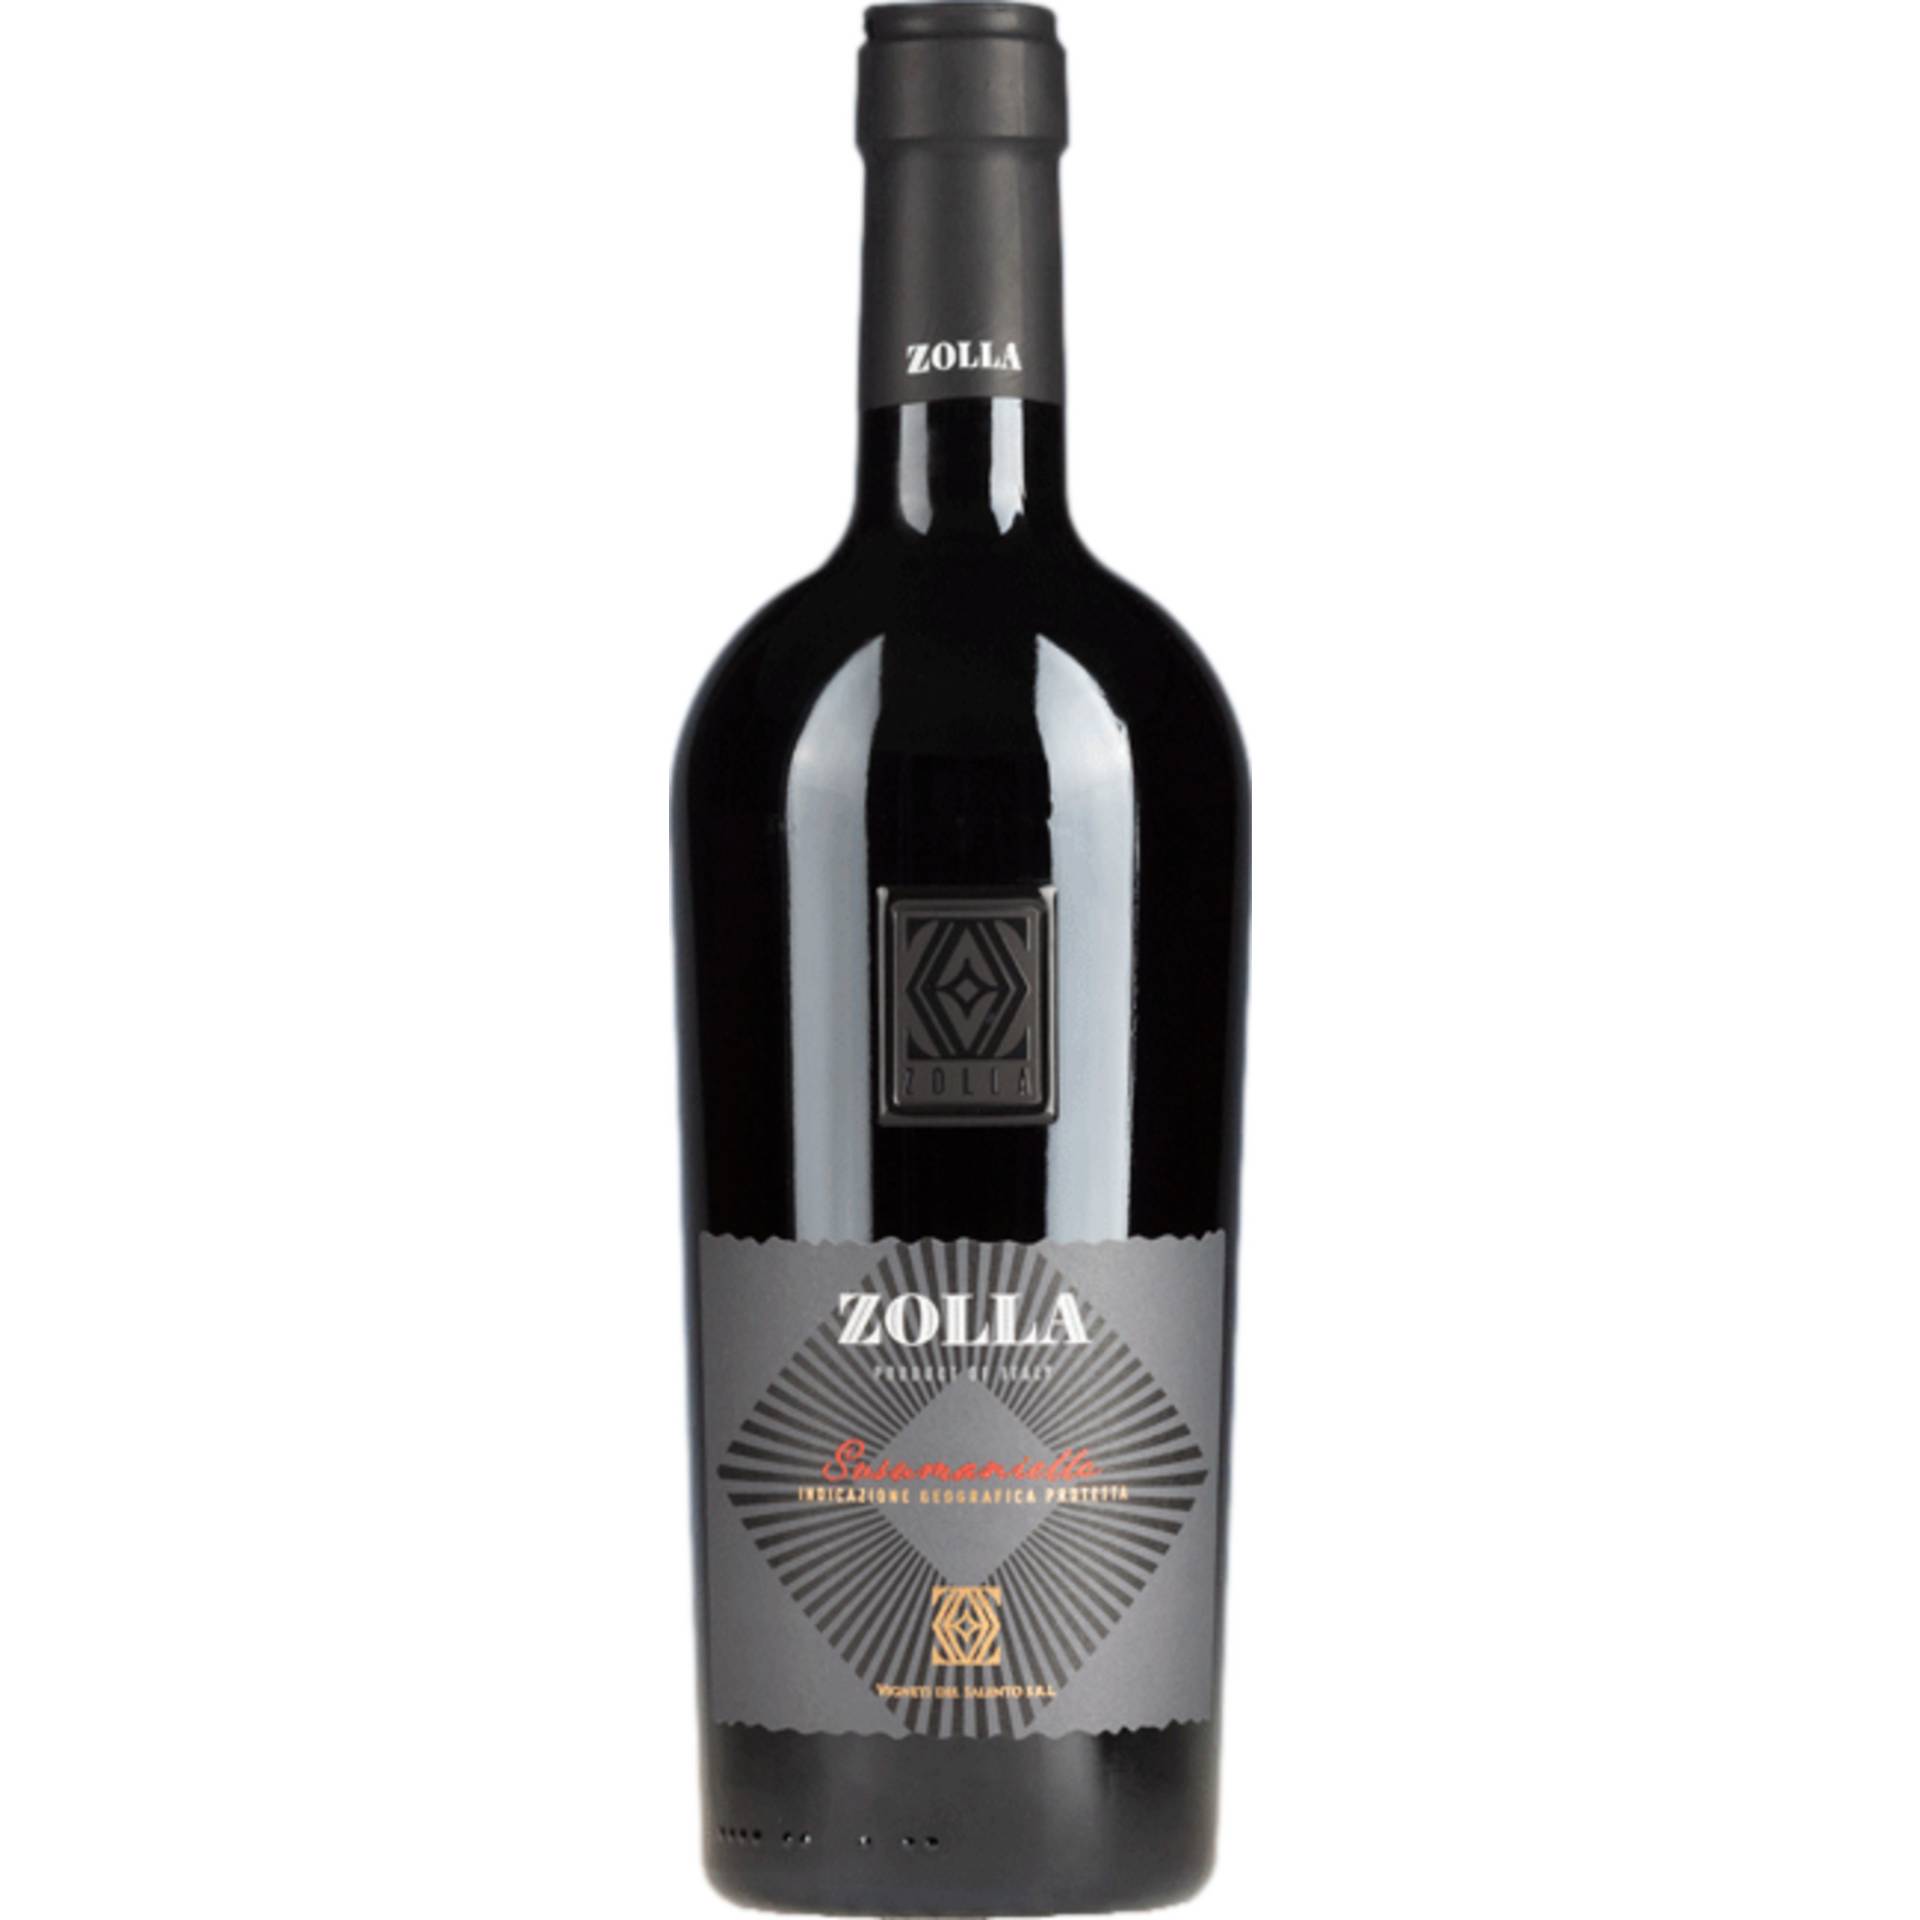 Zolla Susumaniello, Puglia IGP, Apulien, 2020, Rotwein von Vignete del Salento, Via Vigne, 84040 Velina, Italien